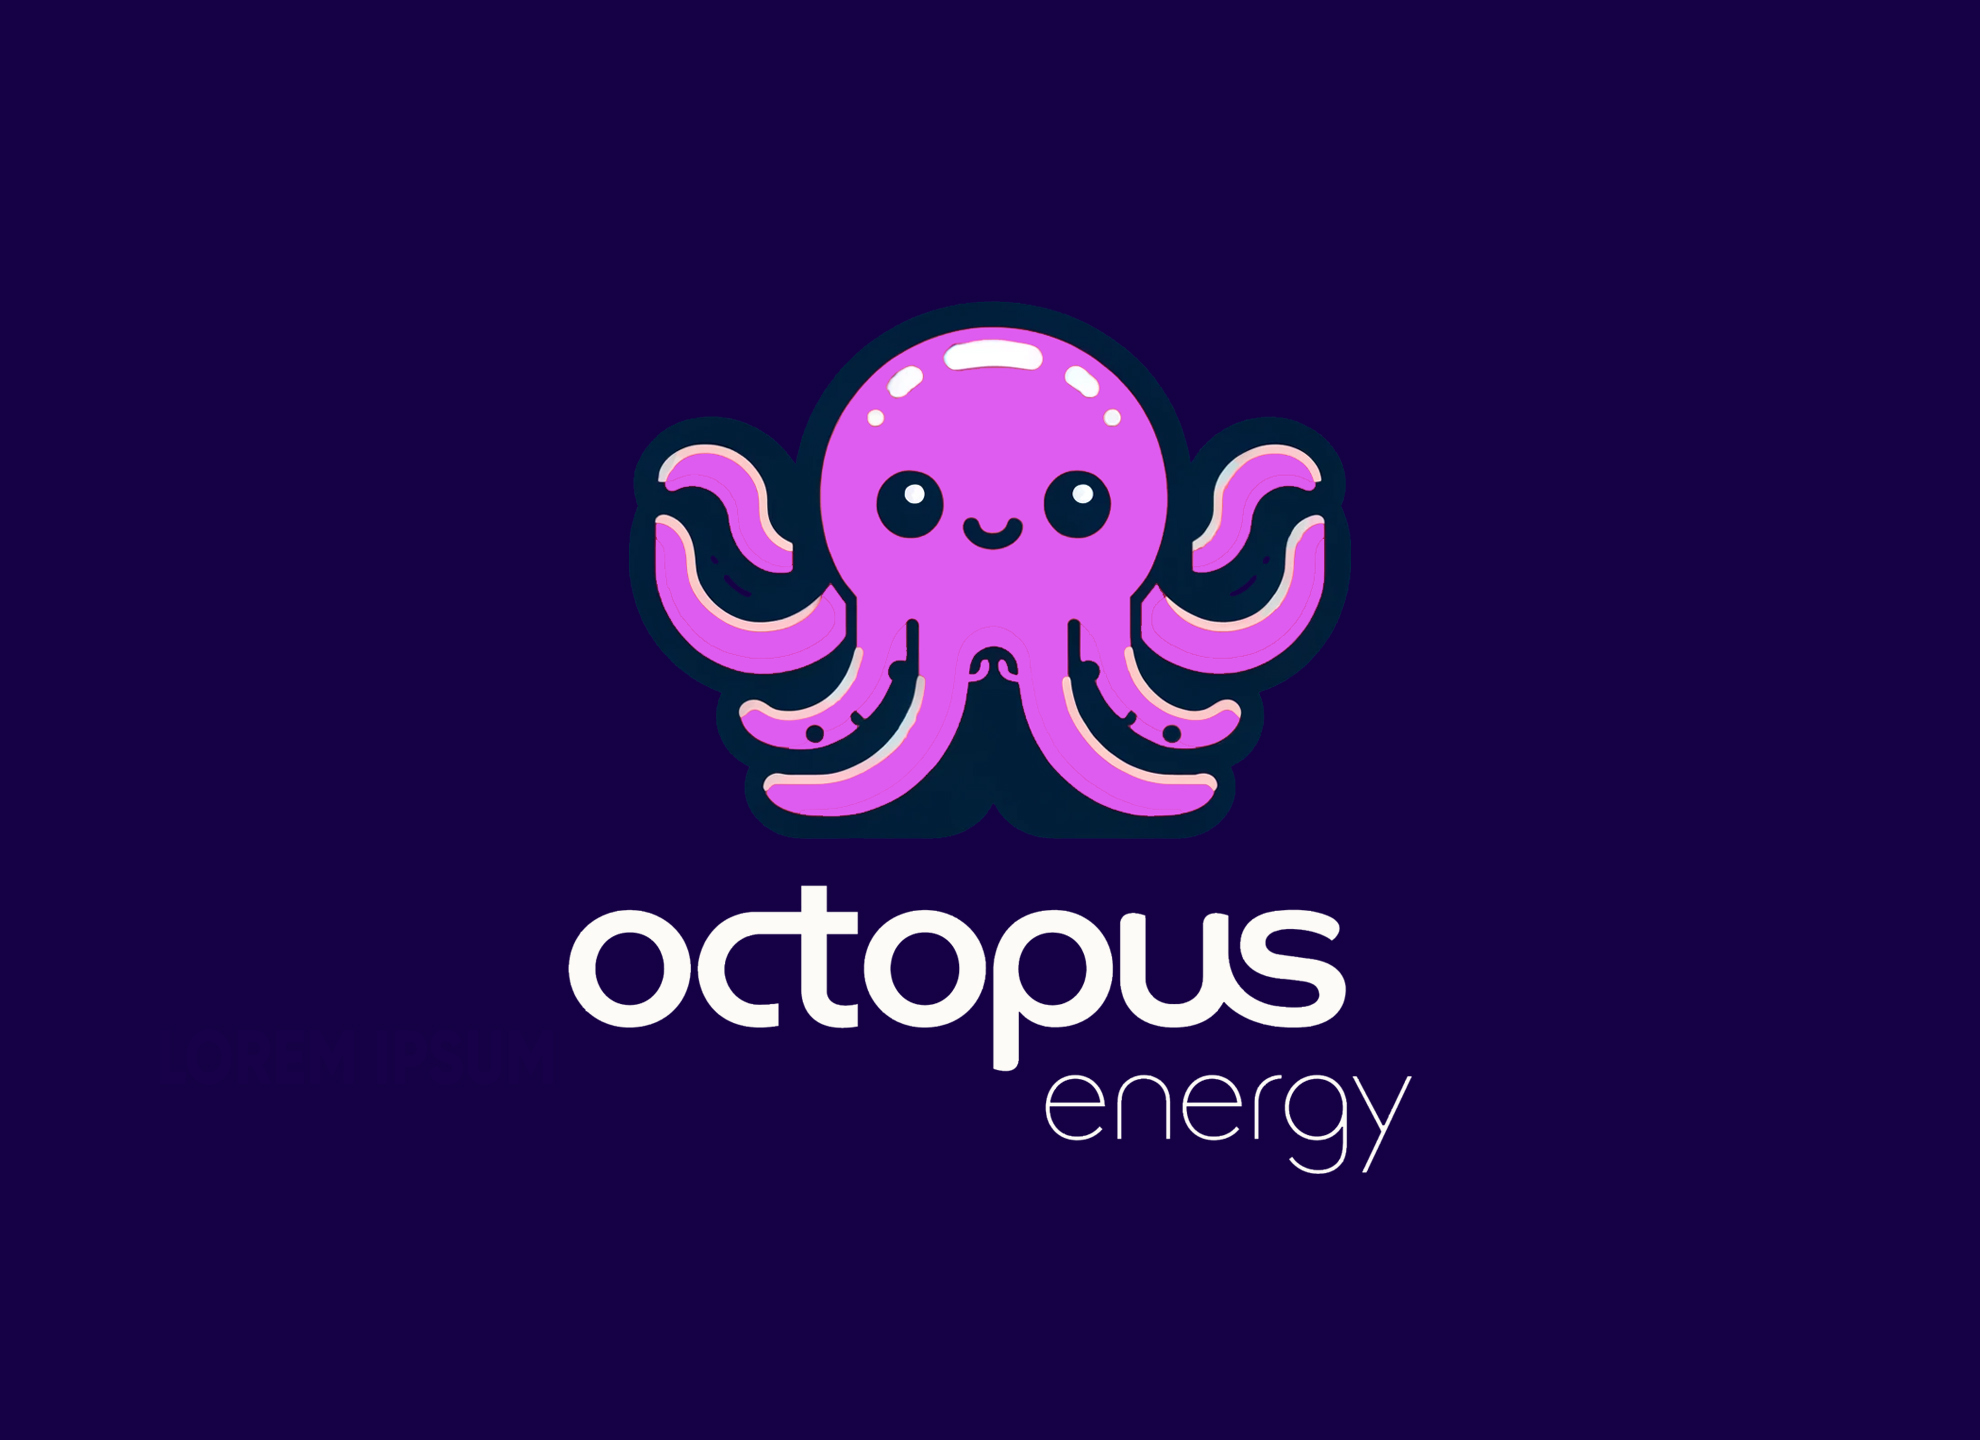 Recensione Octopus Energy dopo 7 mesi: assistenza e convenienza 4